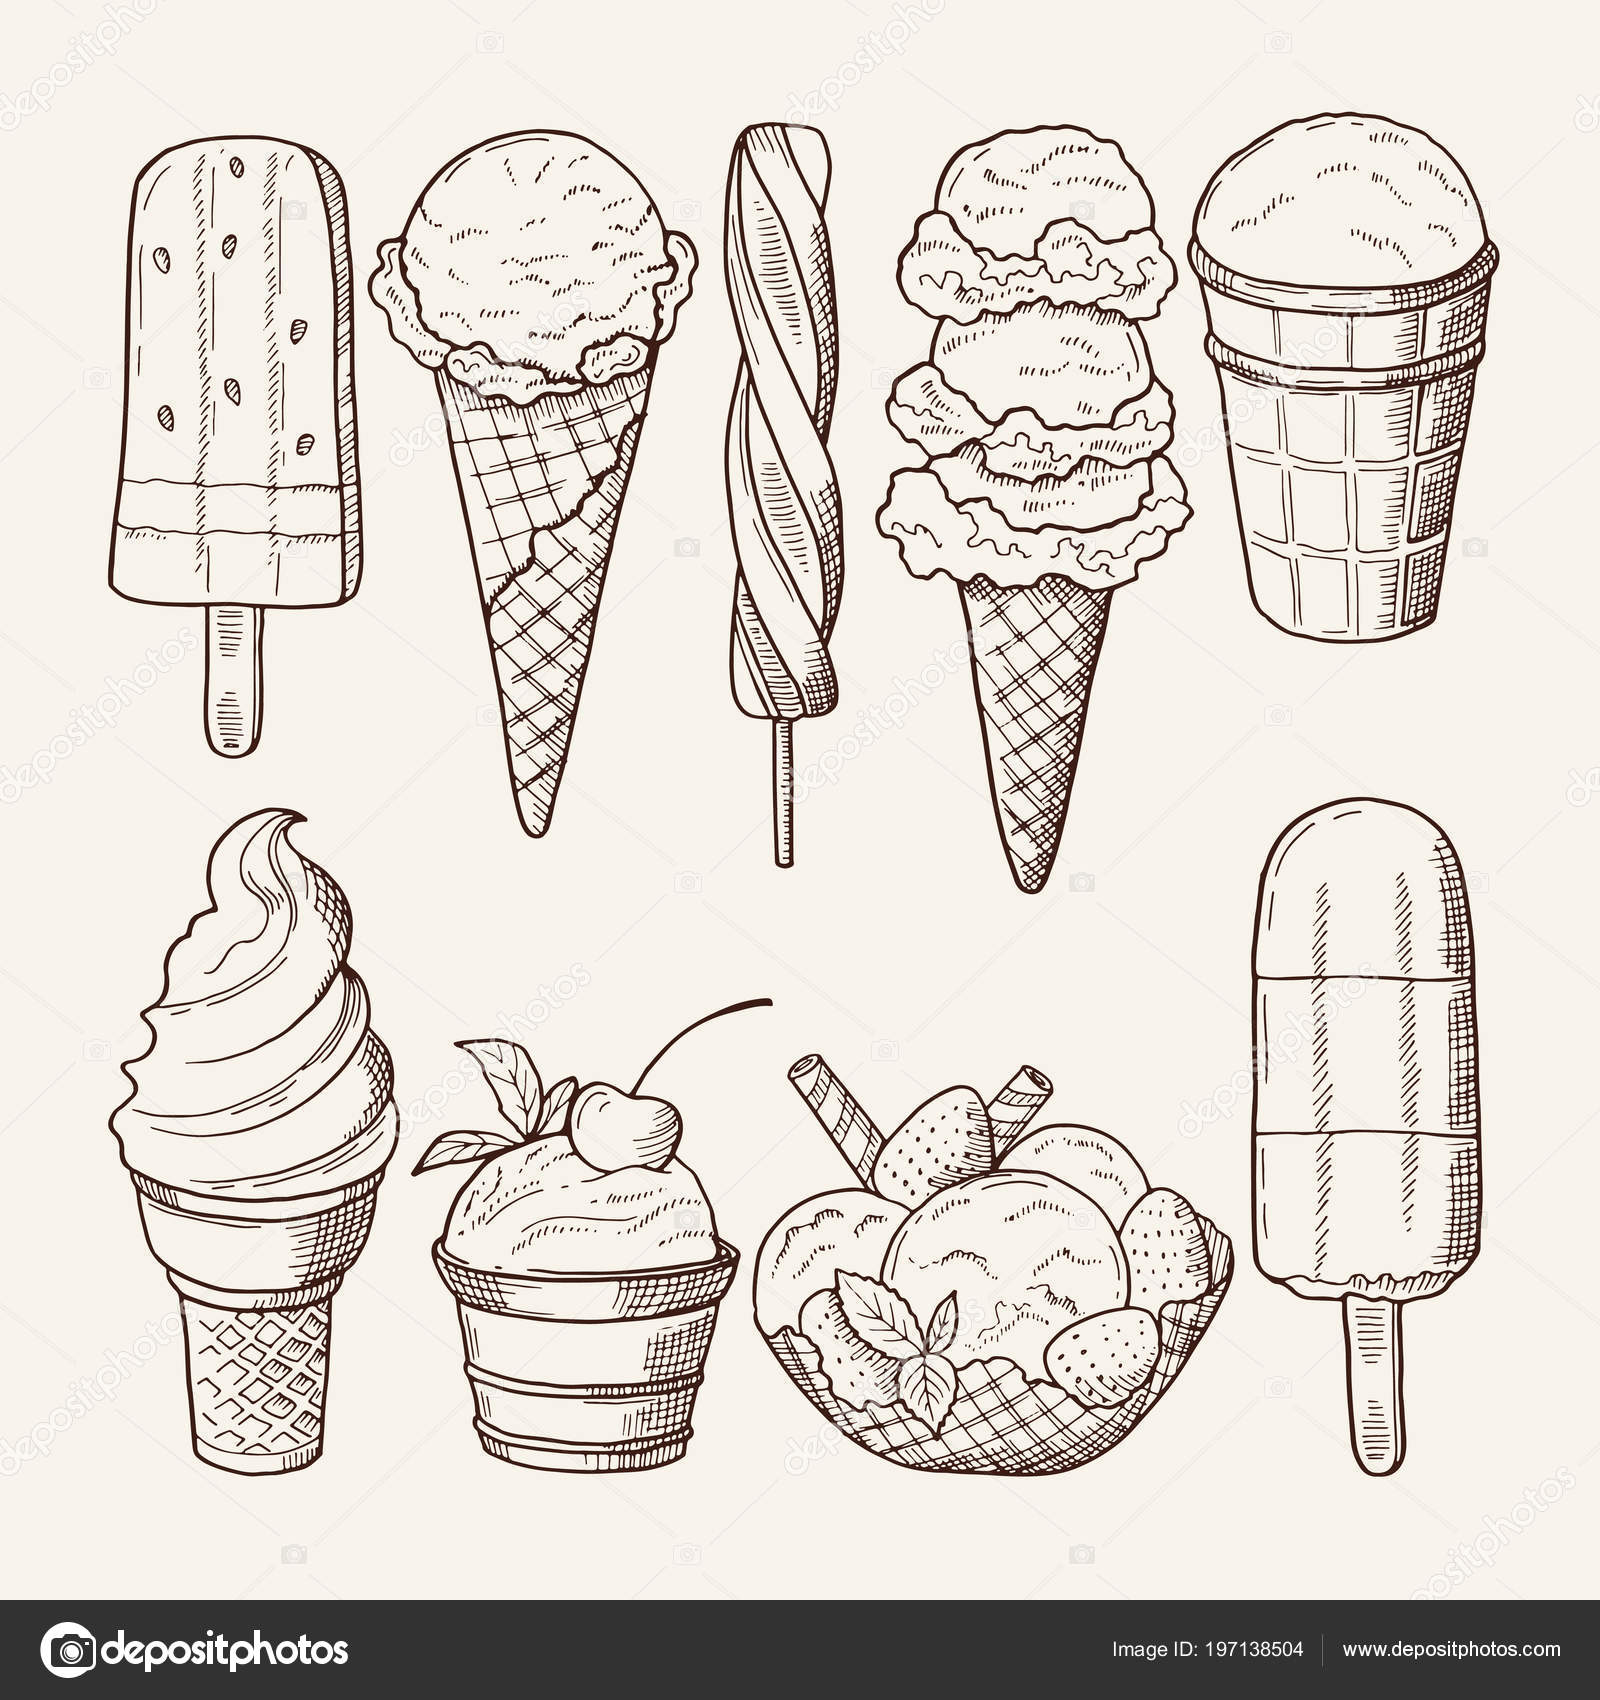 Мороженое в графике